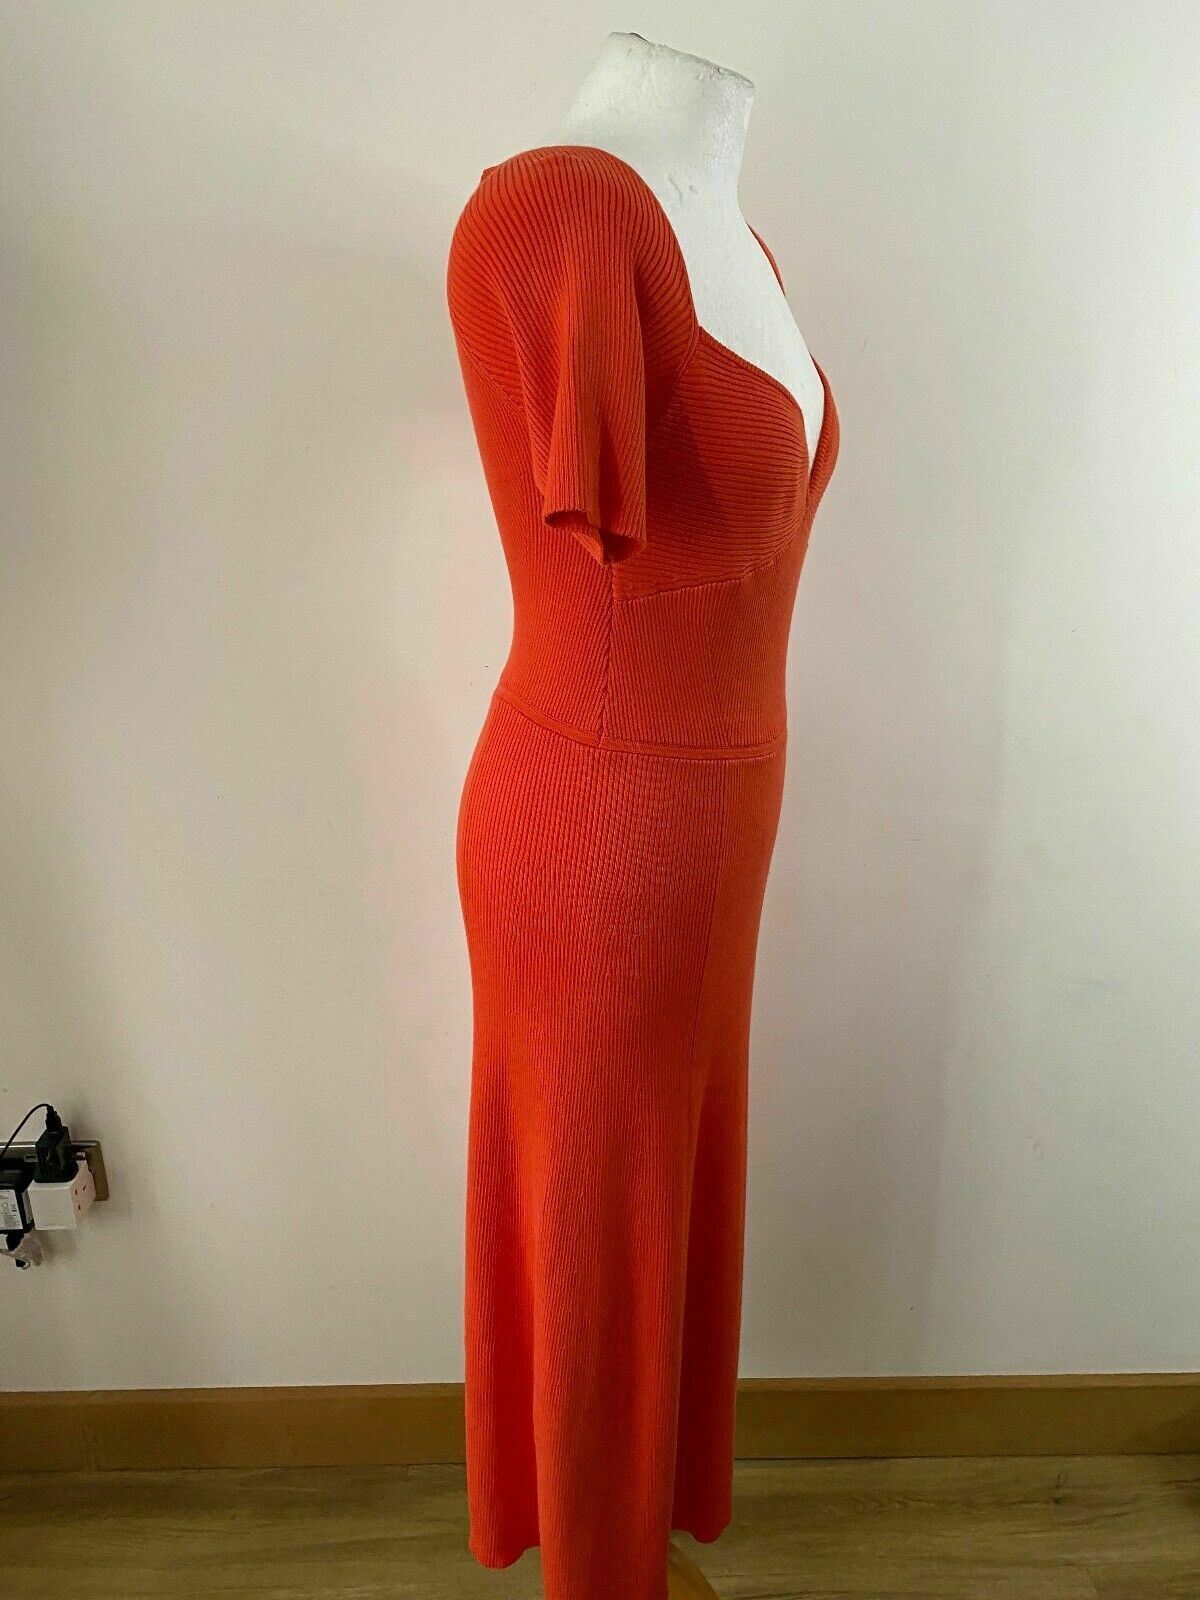 Ribbed Knit Orange Long Dress Size 10 Sweetheart Neck